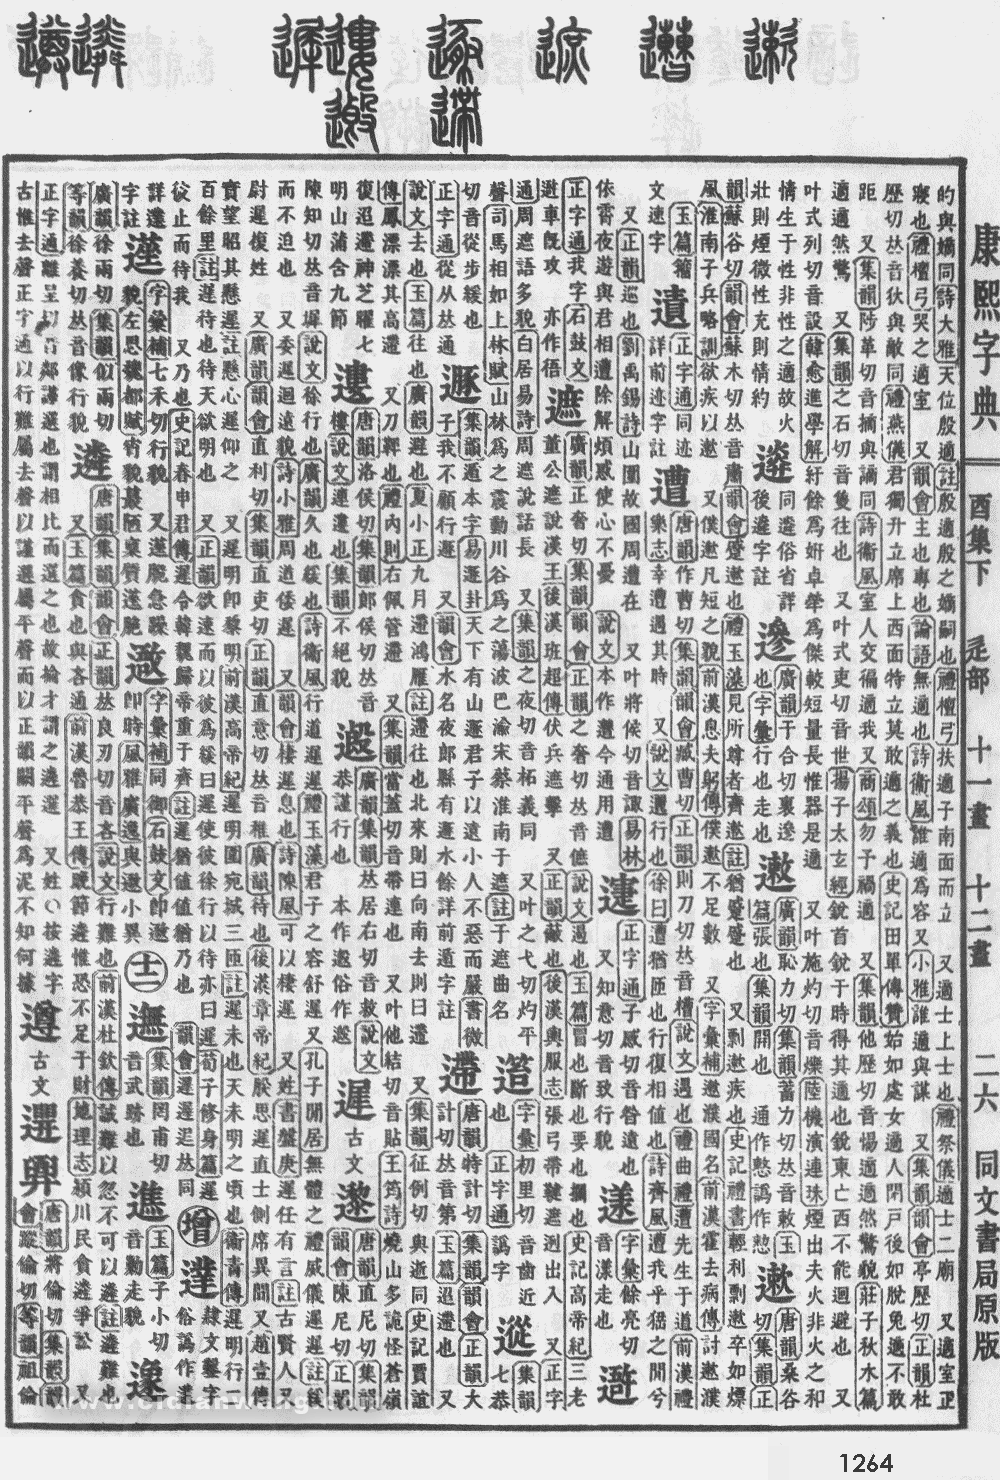 康熙字典掃描版第1264頁